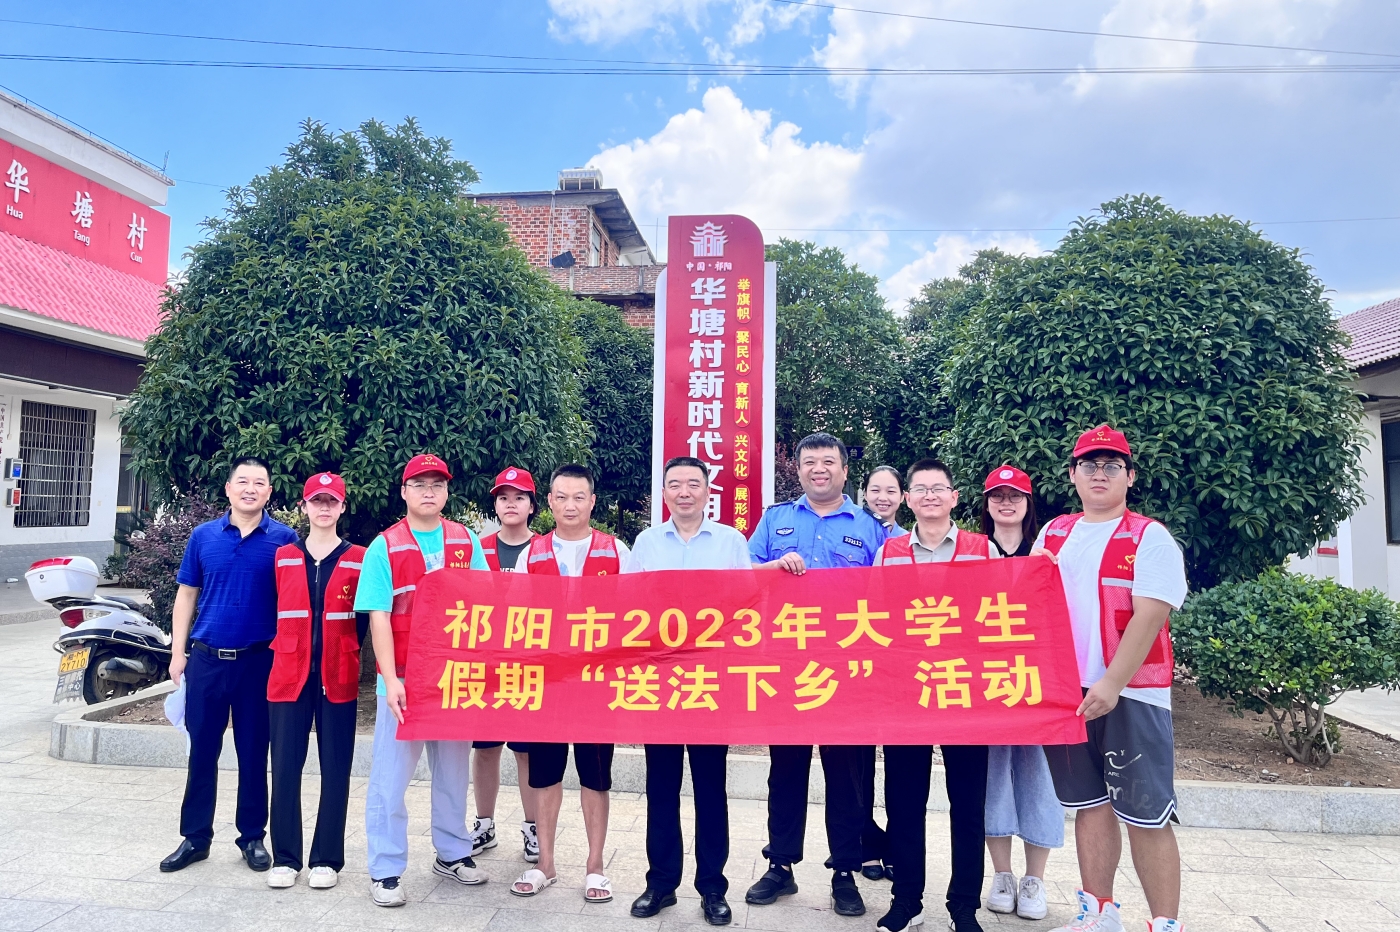 祁阳市司法局组织返乡大学生志愿者到梅溪镇开展“送法下乡”普法宣传活动。